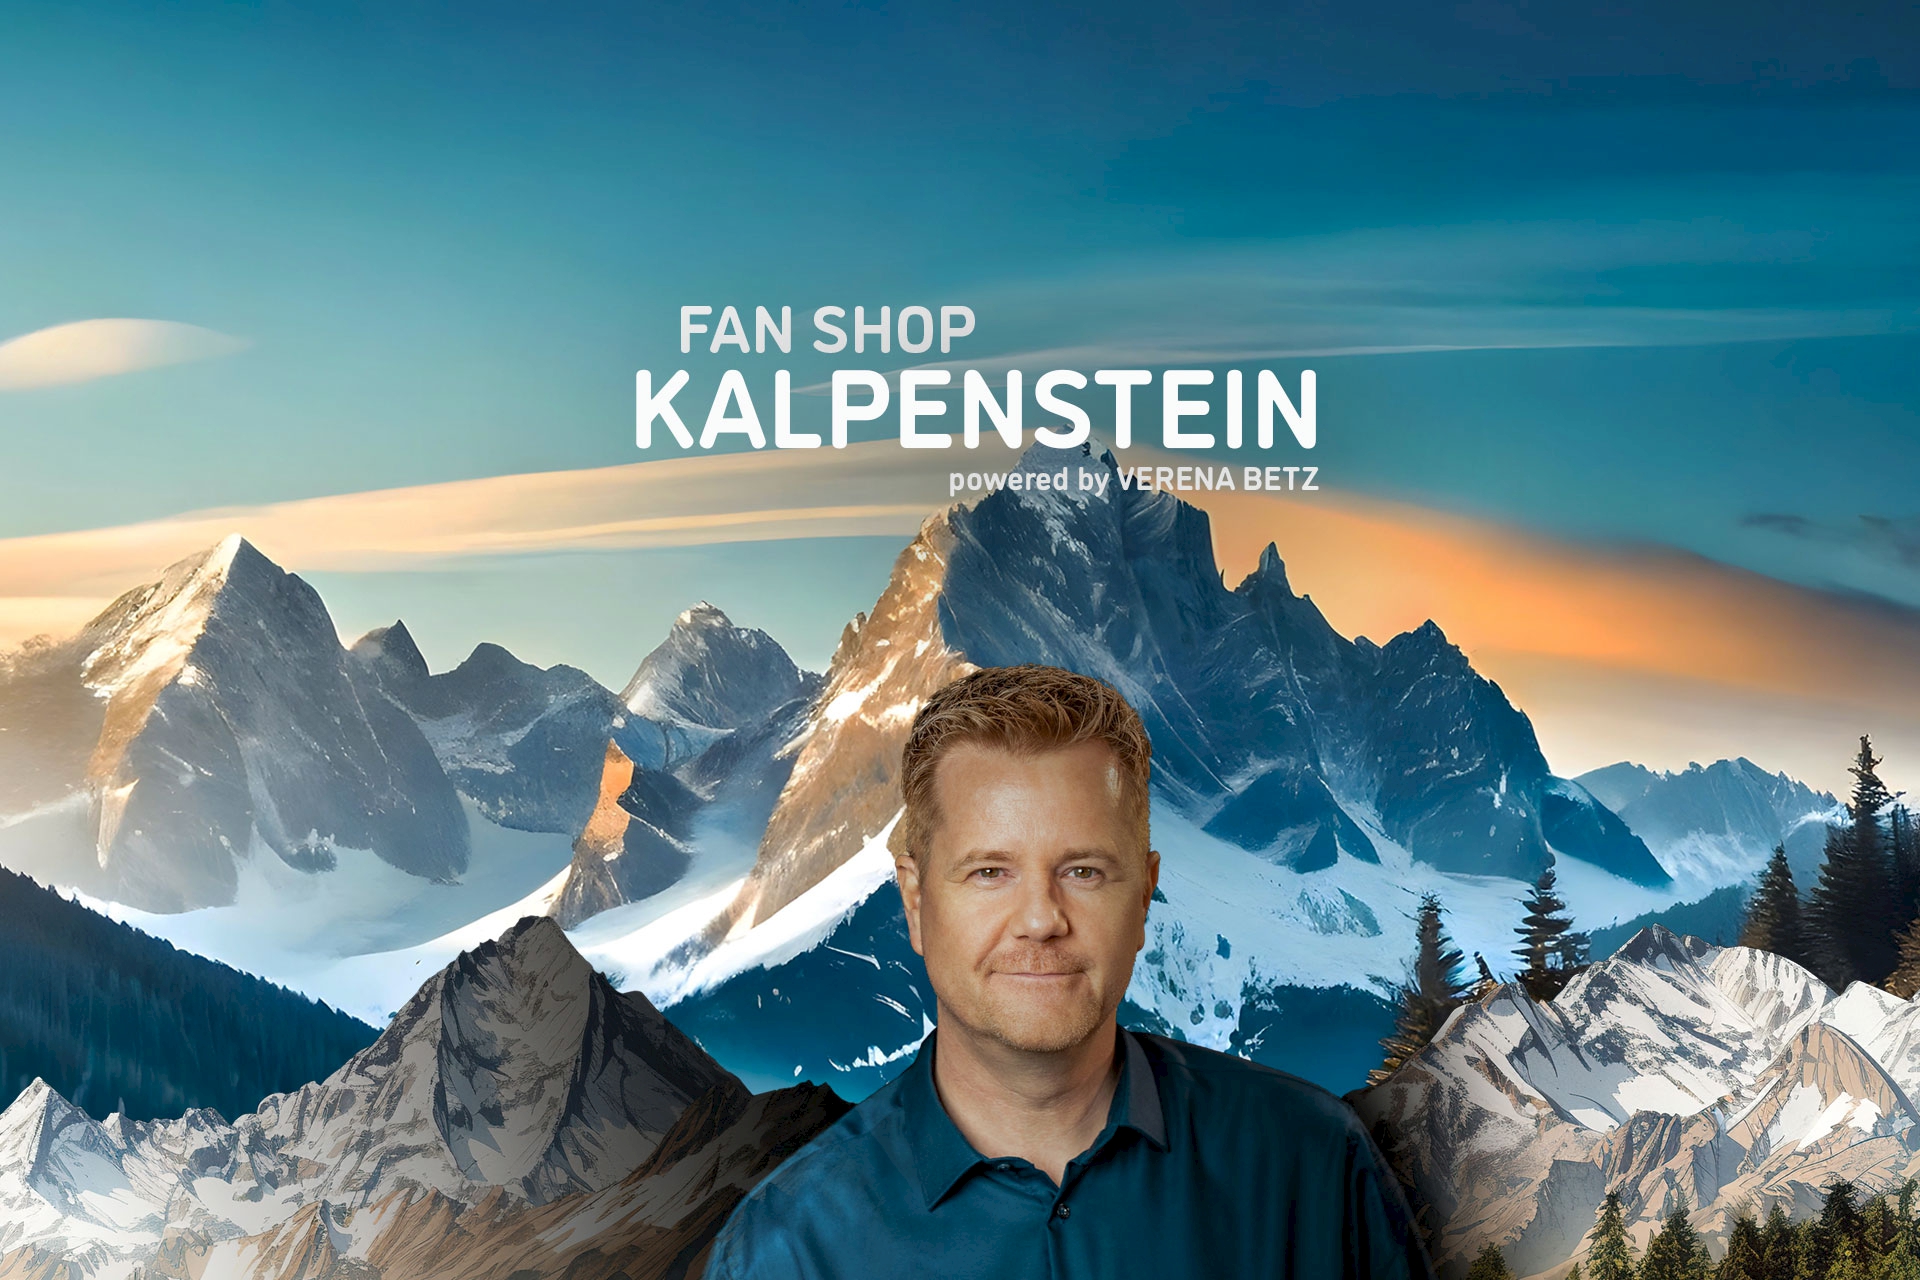 Auf dem Bild ist Friedrich Kalpenstein vor einer Bergkette im Abendrot zu sehen. Von dieser Seite aus geht es zum Kalpenstein Fan-Shop auf Amazon.